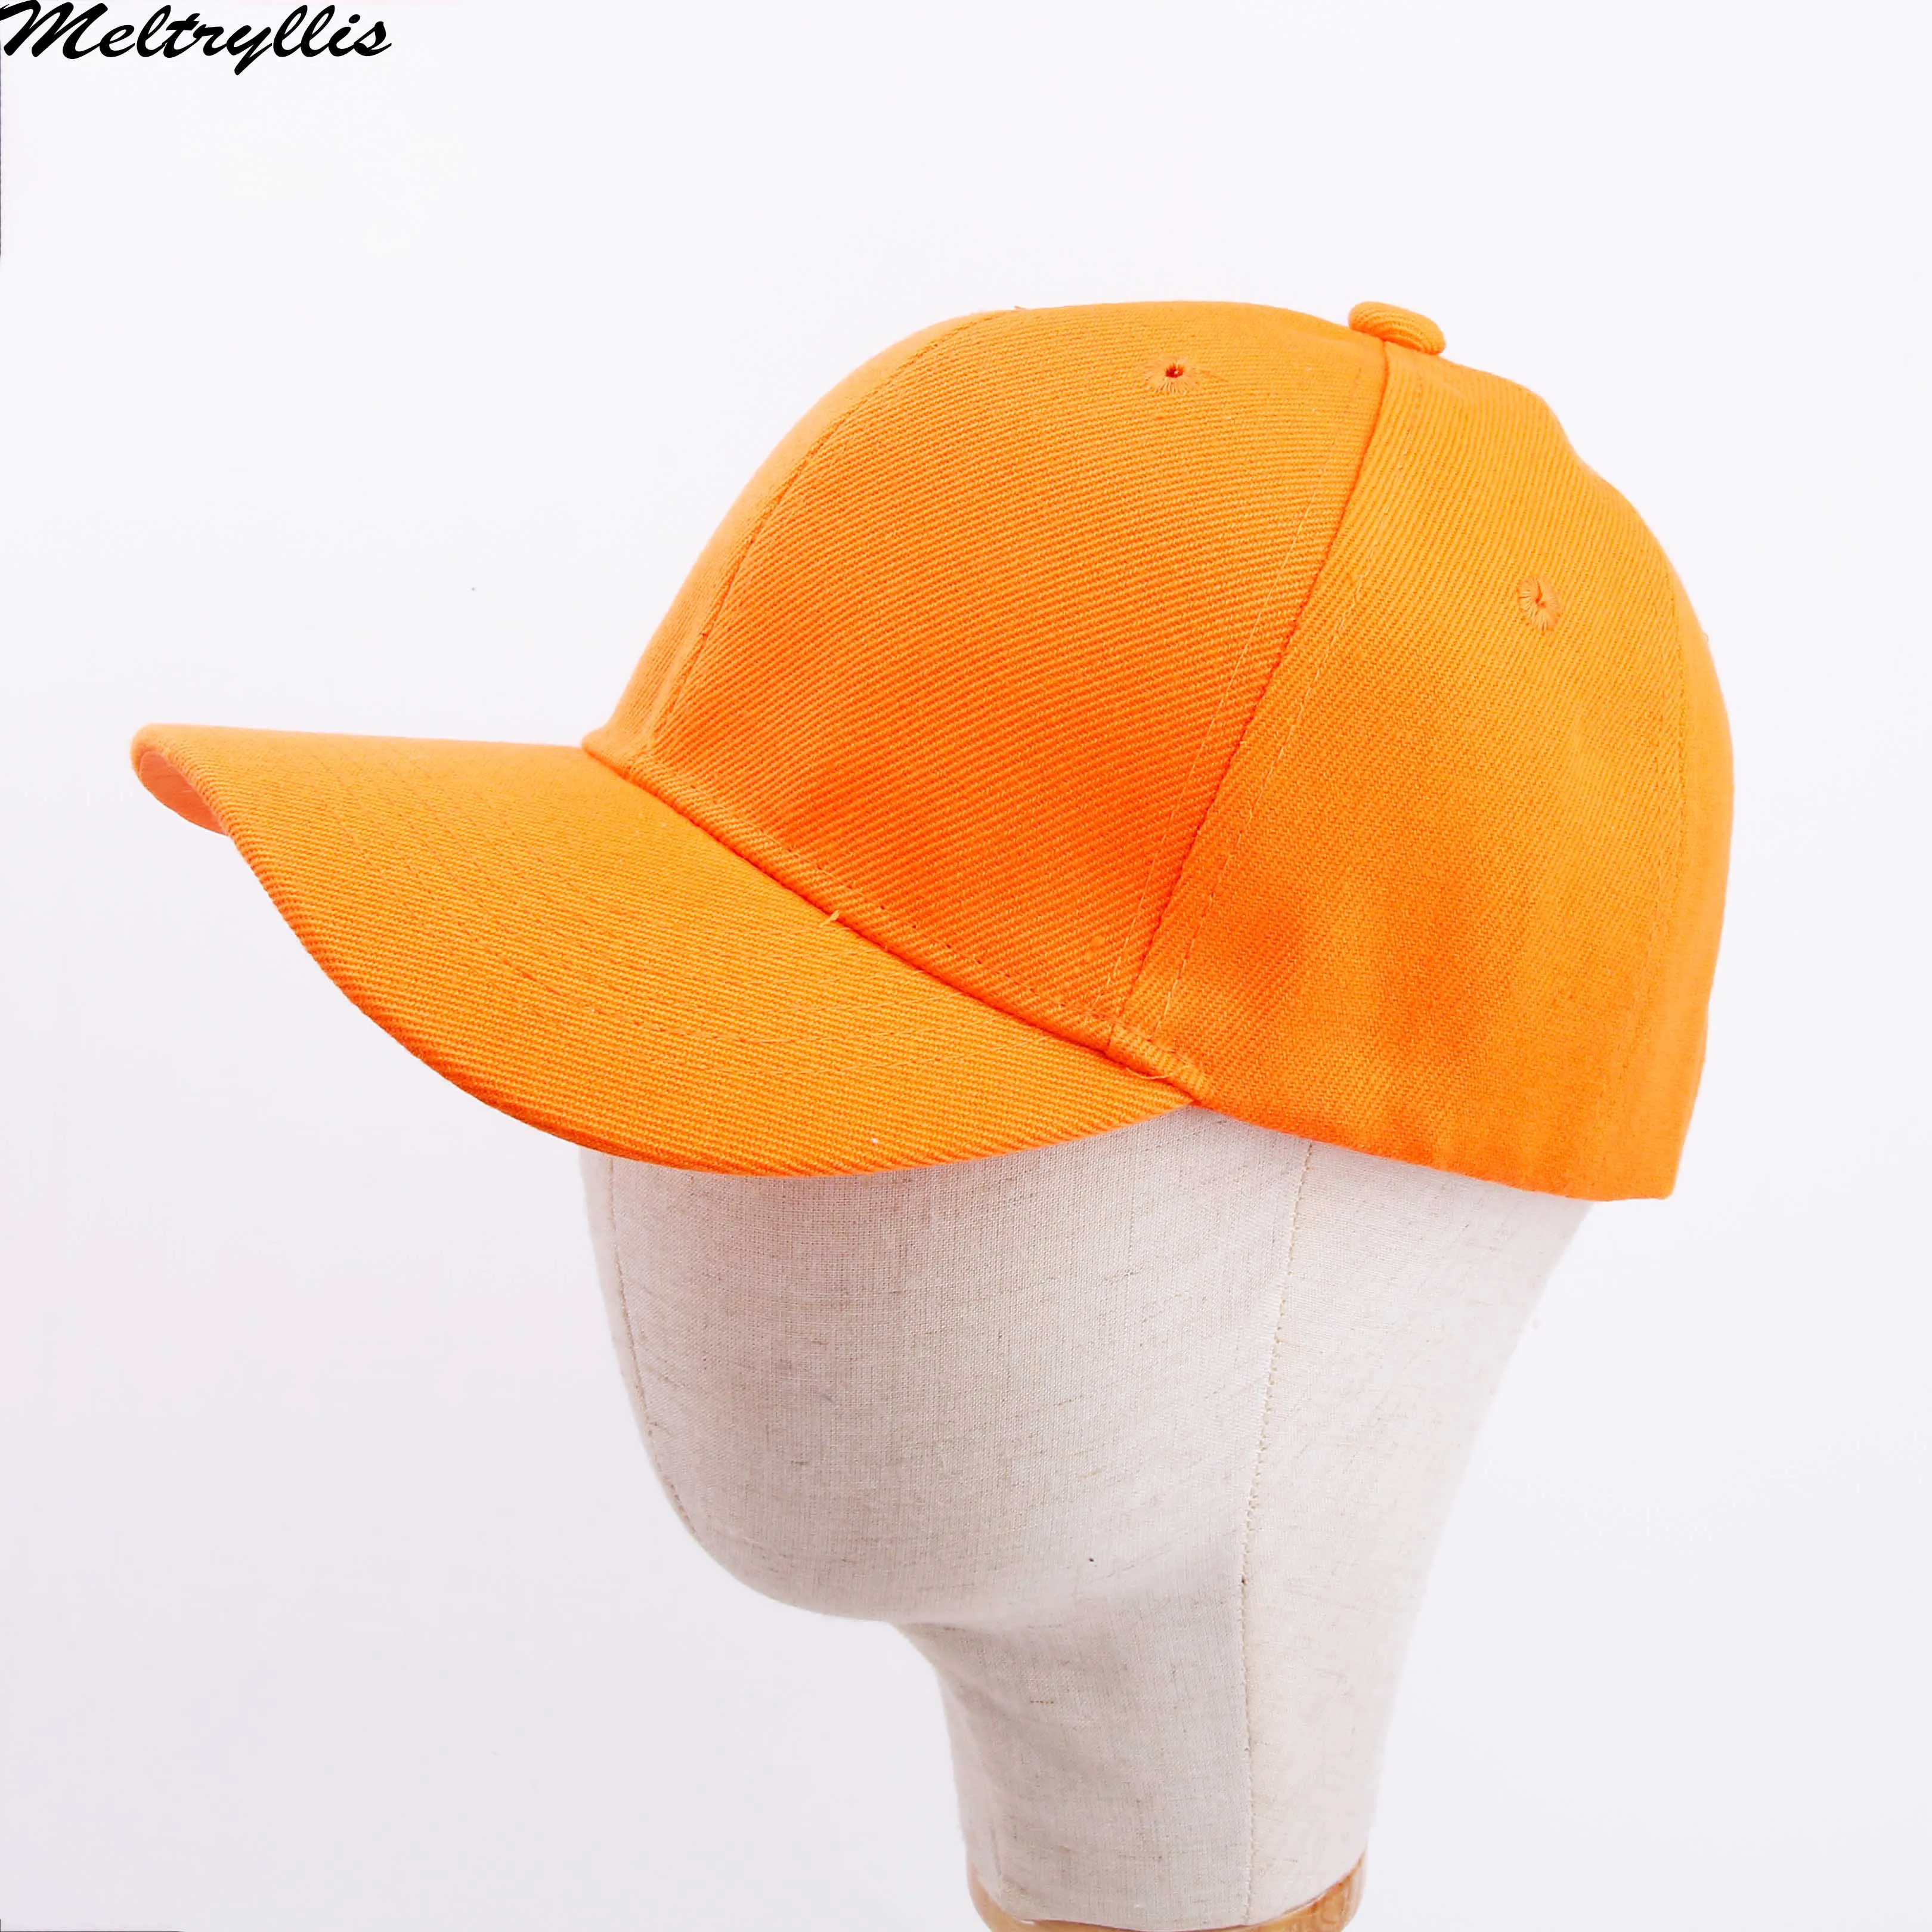 [Meltryllis] изогнутый солнцезащитный козырек, светильник, однотонный цвет, оранжевый, желтый, фиолетовый, бейсбольная кепка для мужчин, wo, Мужская модная уличная Спортивная Кепка